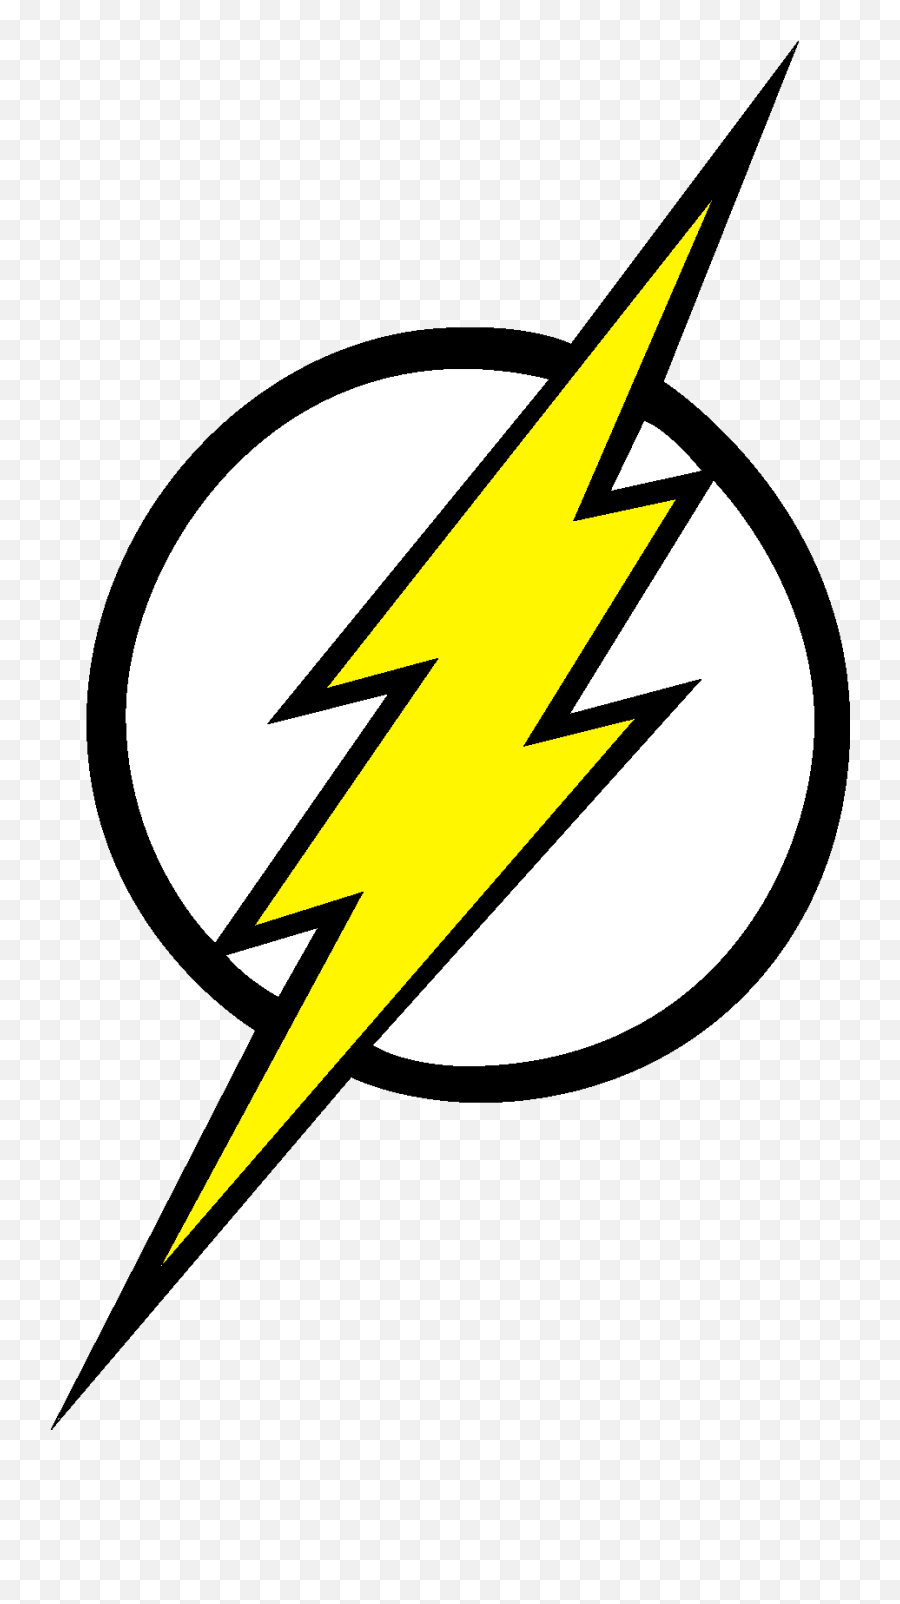 The Flash Lightning Bolt Clipart - Flash Lightning Bolt Svg Png,The Flash Logo Png